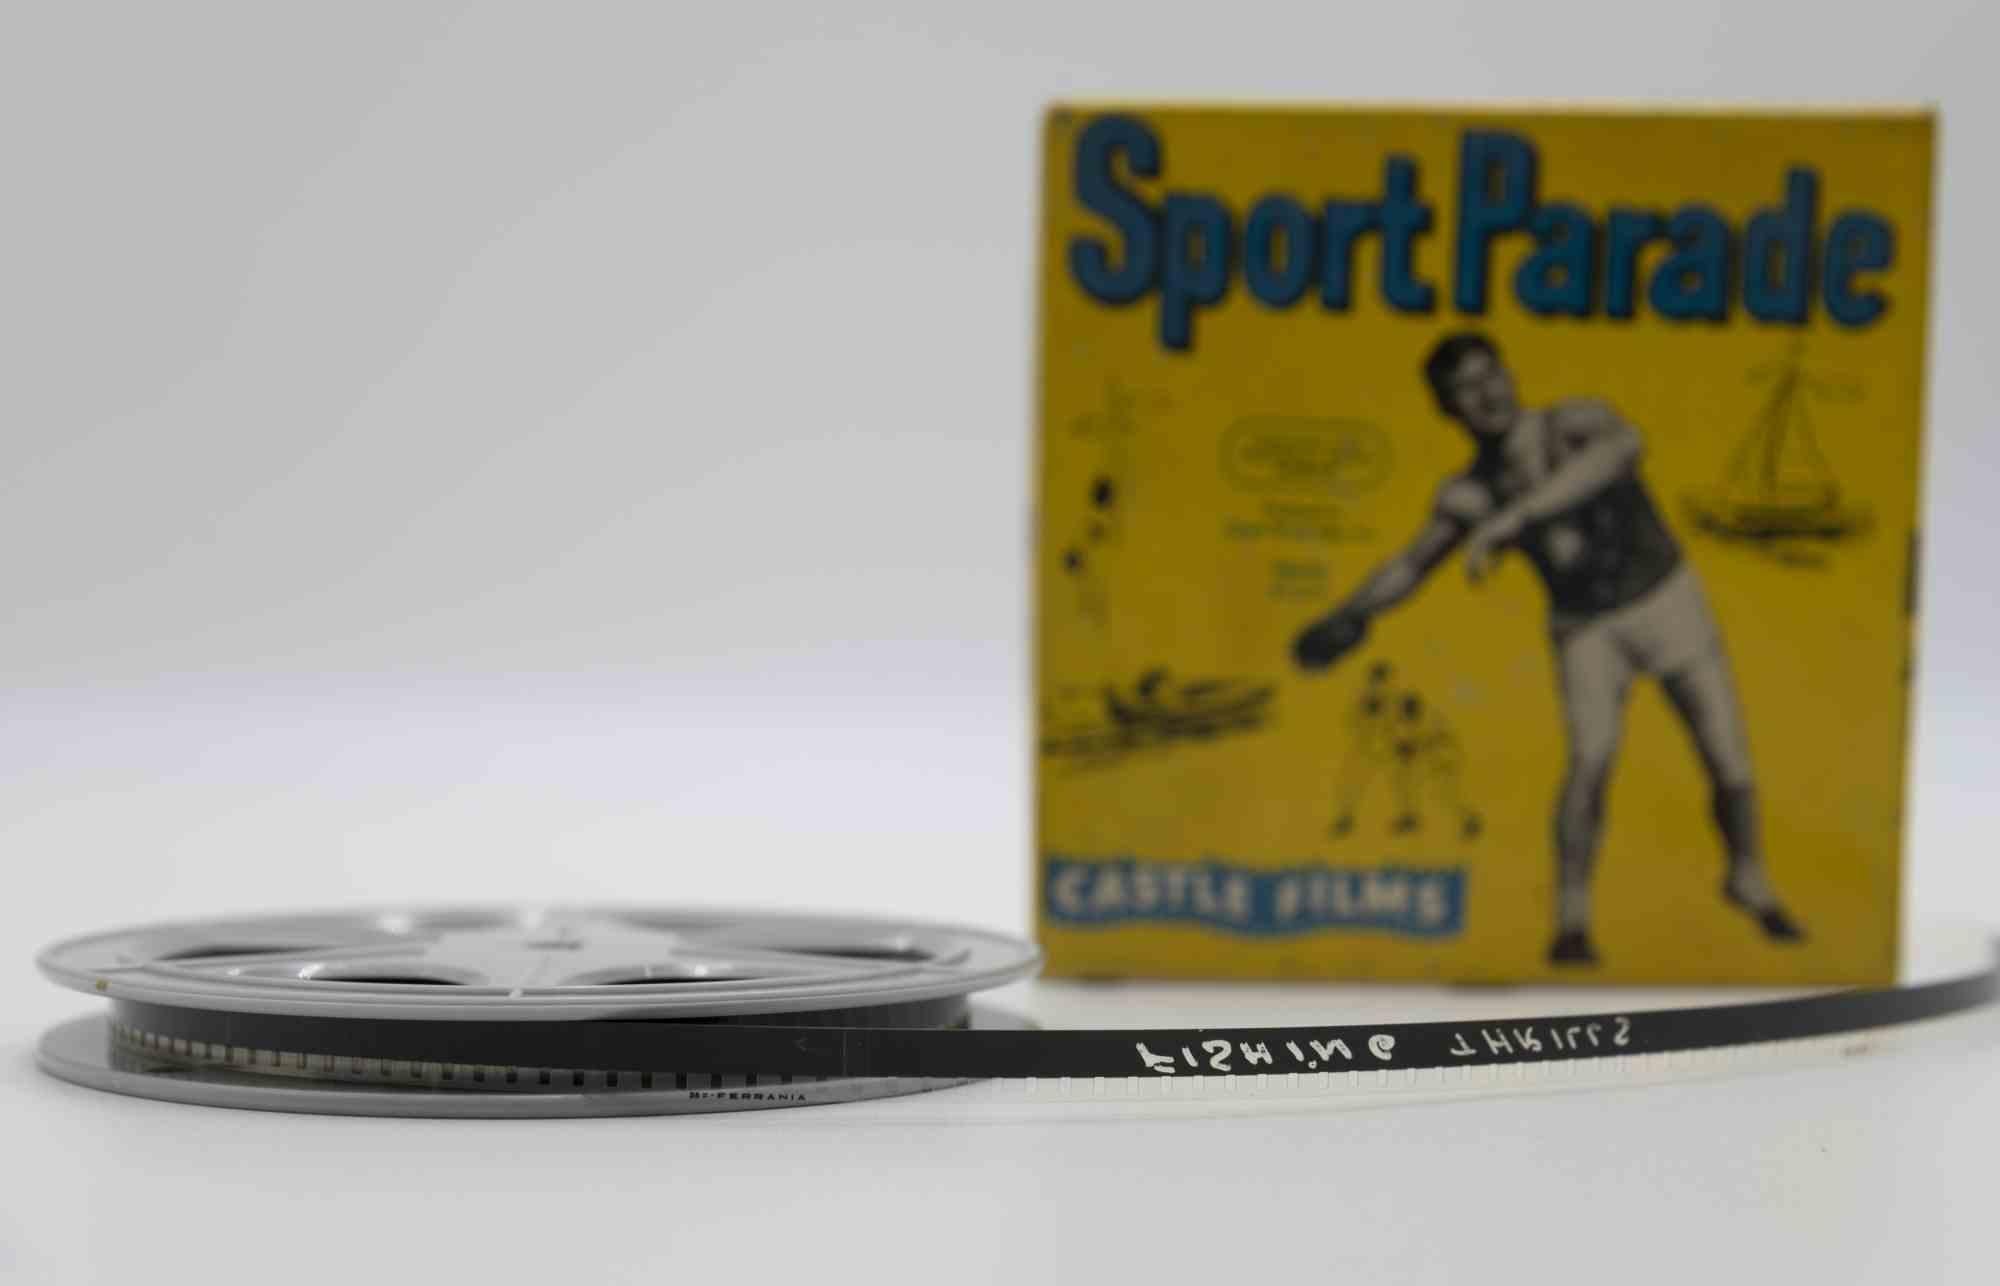 Der Sportparadenfilm ist ein Originalfilm aus den 1950er Jahren.

Sie enthält die Originalverpackung.

8mm oder 16mm.

Gute Bedingungen